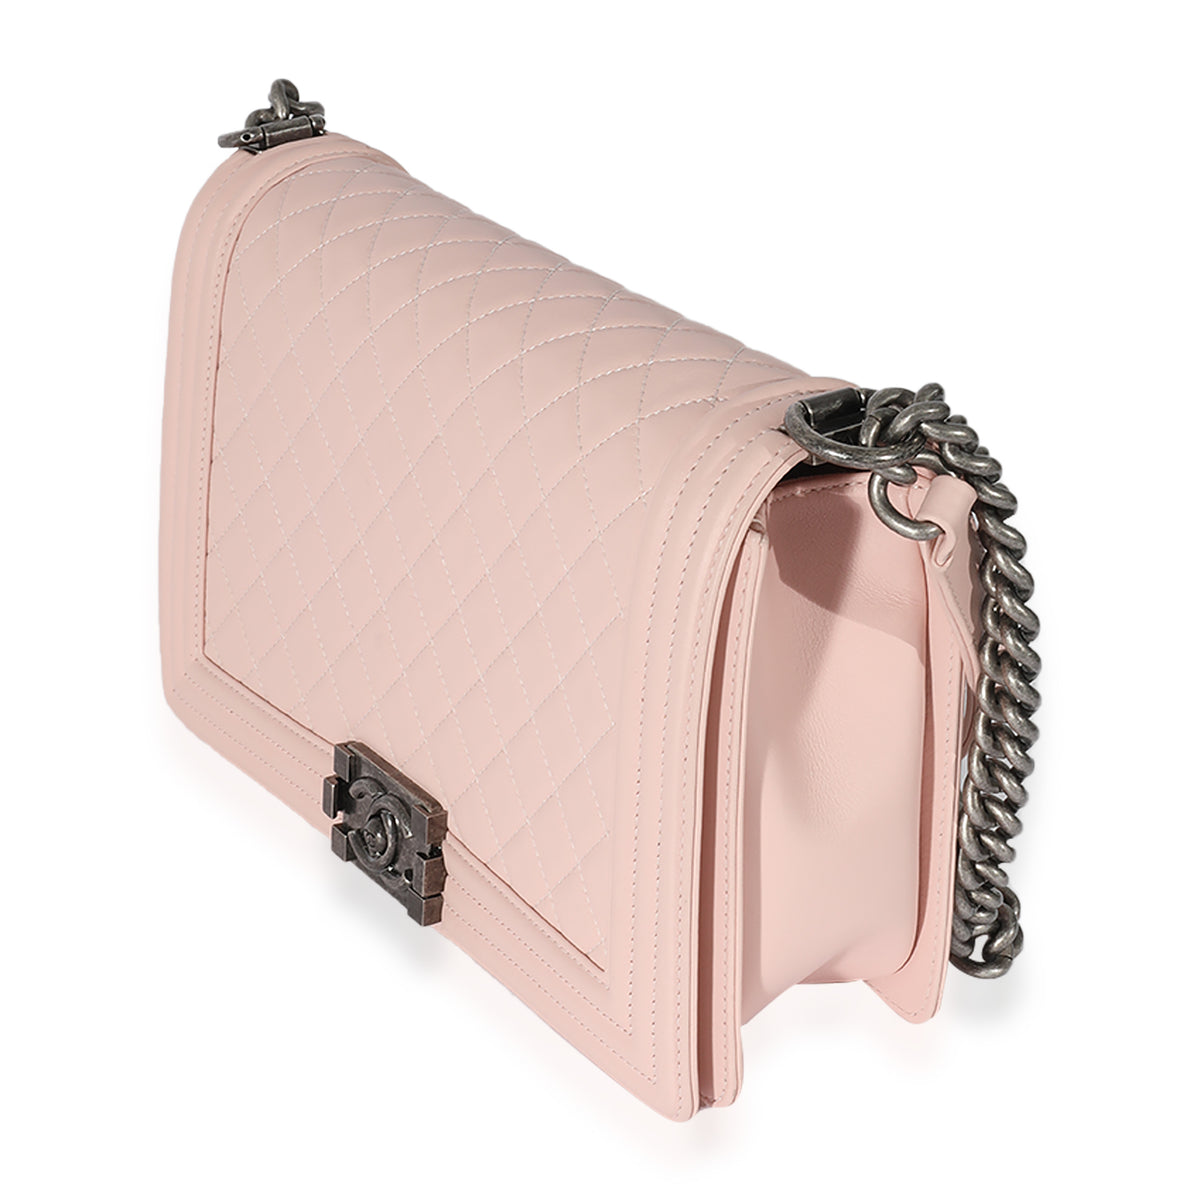 Chanel Light Pink Quilted Calfskin Medium Boy Bag